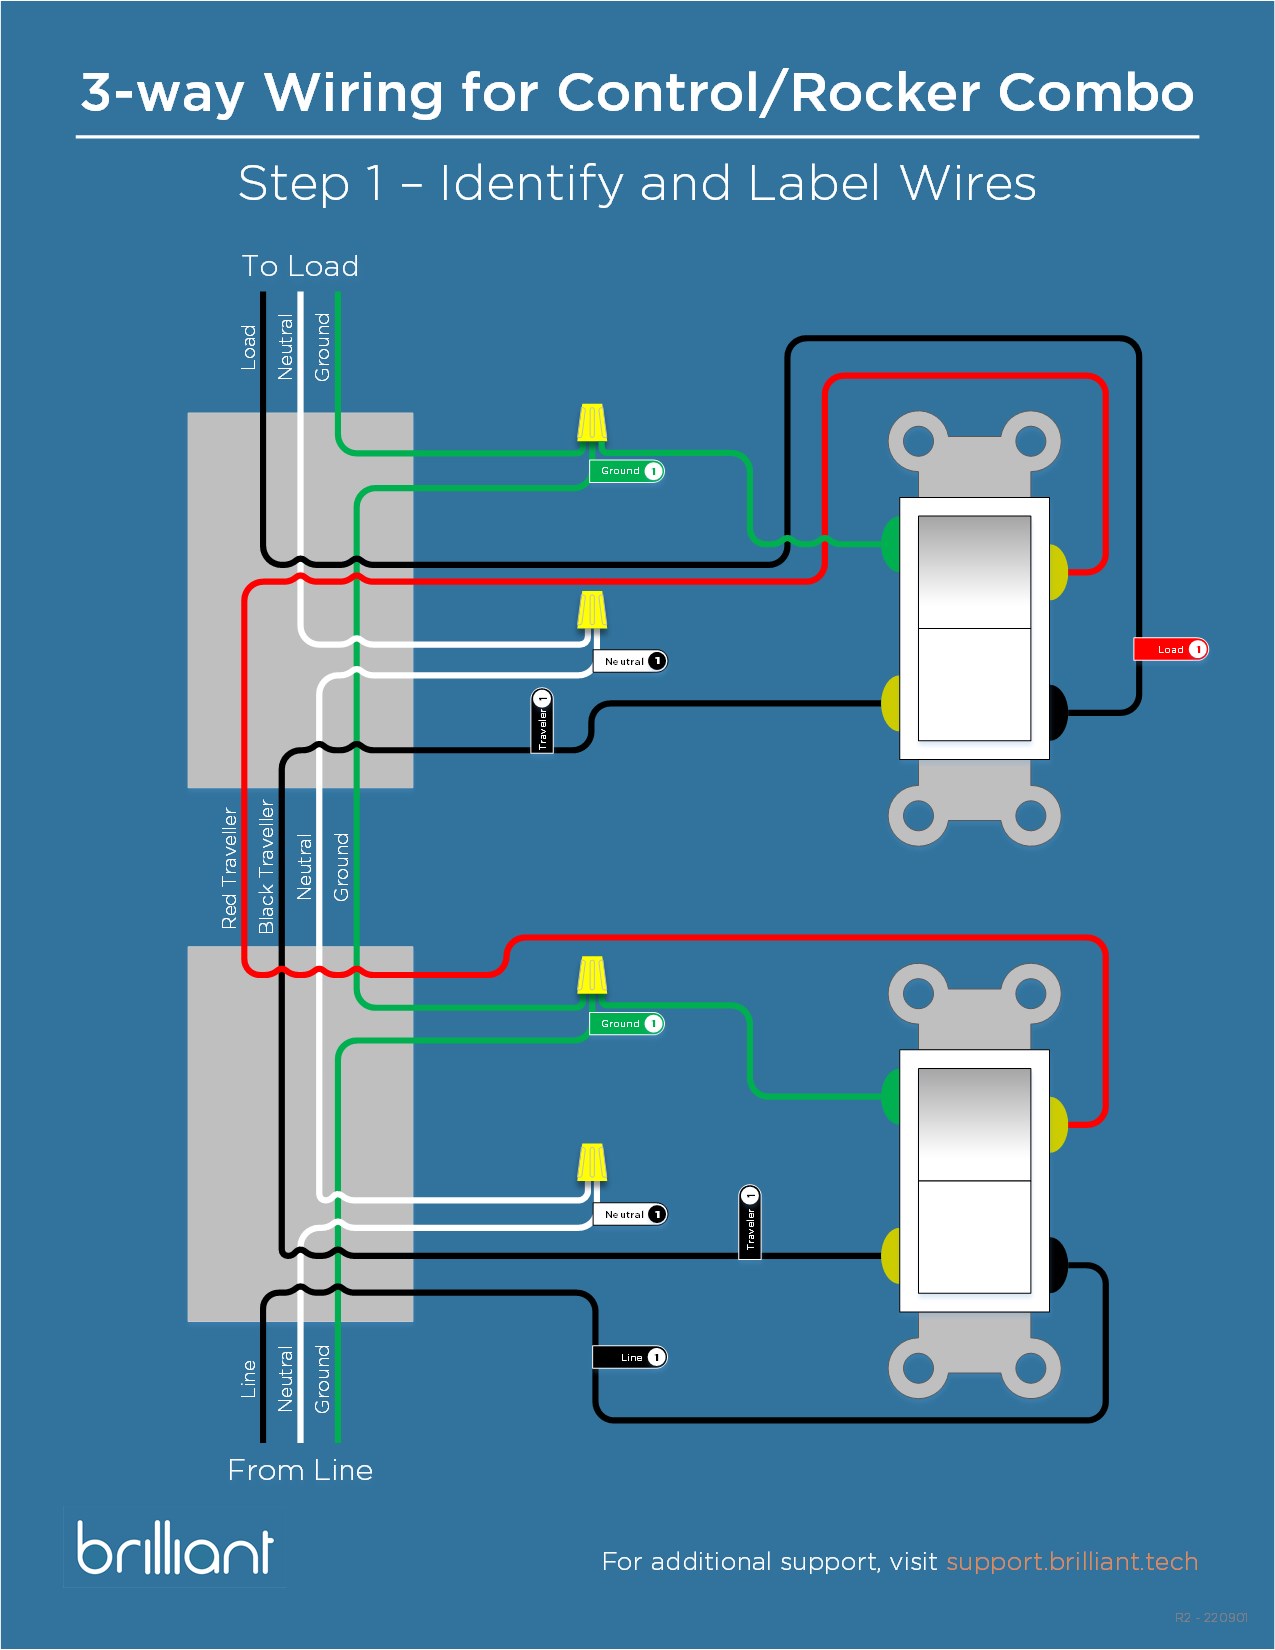 Control_3-way_Wiring_Guide_-_Line-side_Rocker-1.jpg